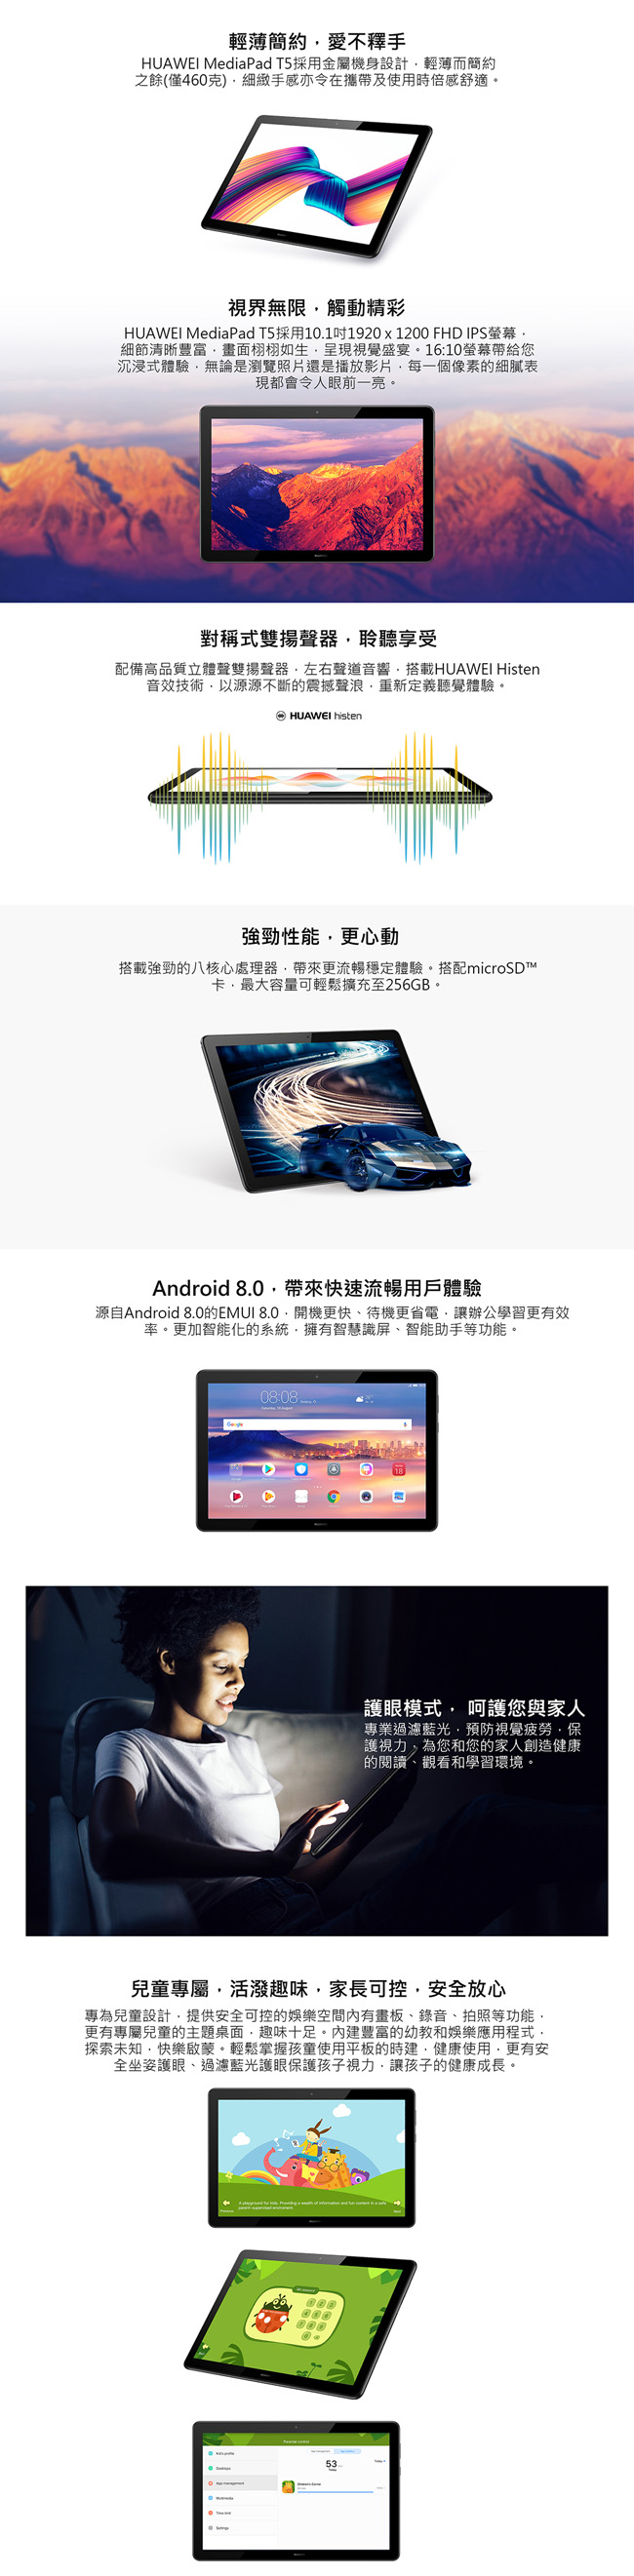 華為 MediaPad T5 10 10.1吋八核心平板 (3G/32G)-金色